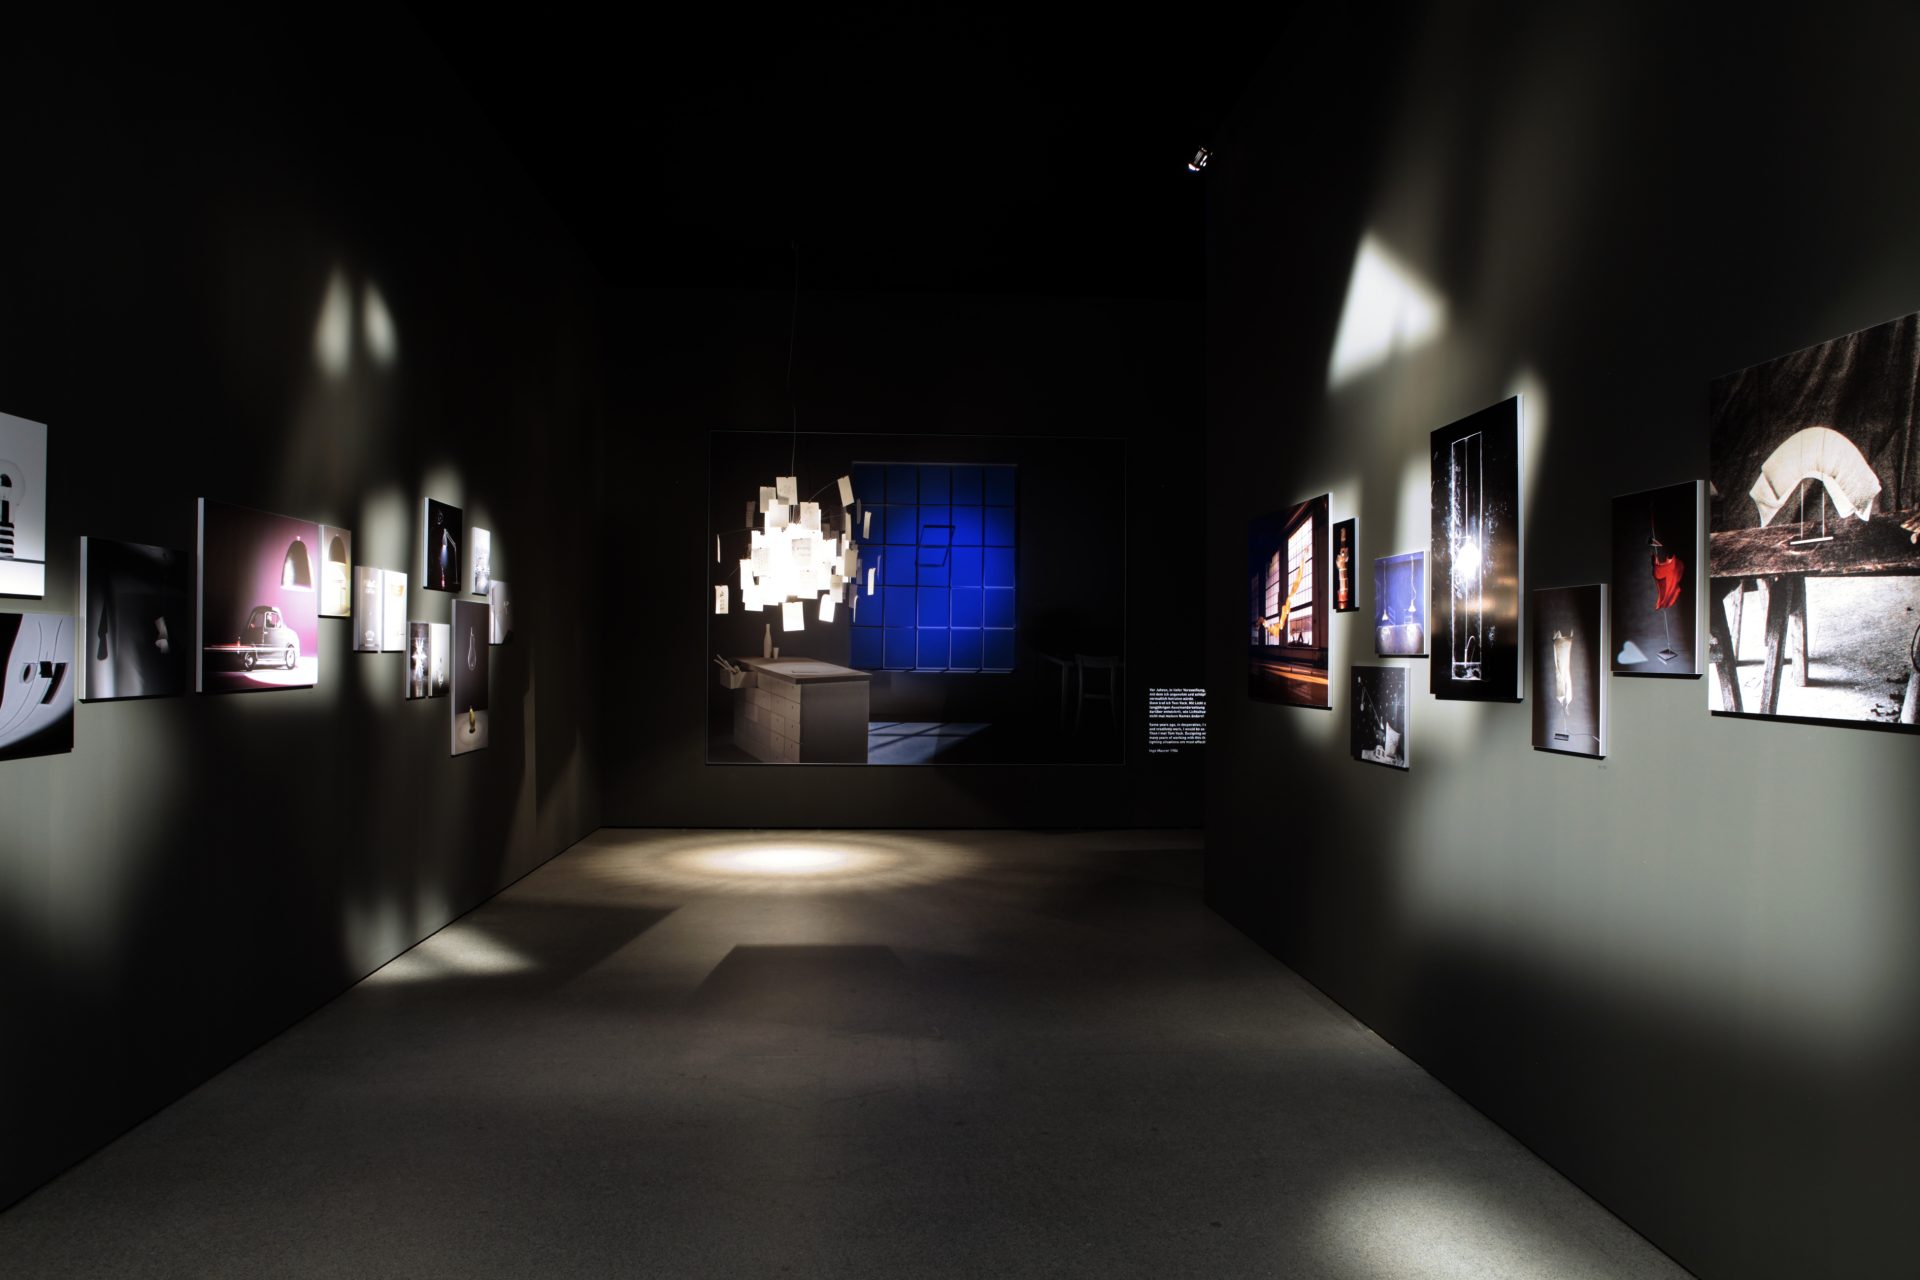 Blick in einen abgedunkelten Raum. Am Ende des Raums hängt eine Leuchte mit weiß-warmem Licht. Daneben scheint sich ein Fenster mit blauen Glasscheiben zu befinden. An den Wänden werden hochwertige Fotografien ausgestellt. Sie zeigen andere Leuchtobjekte.